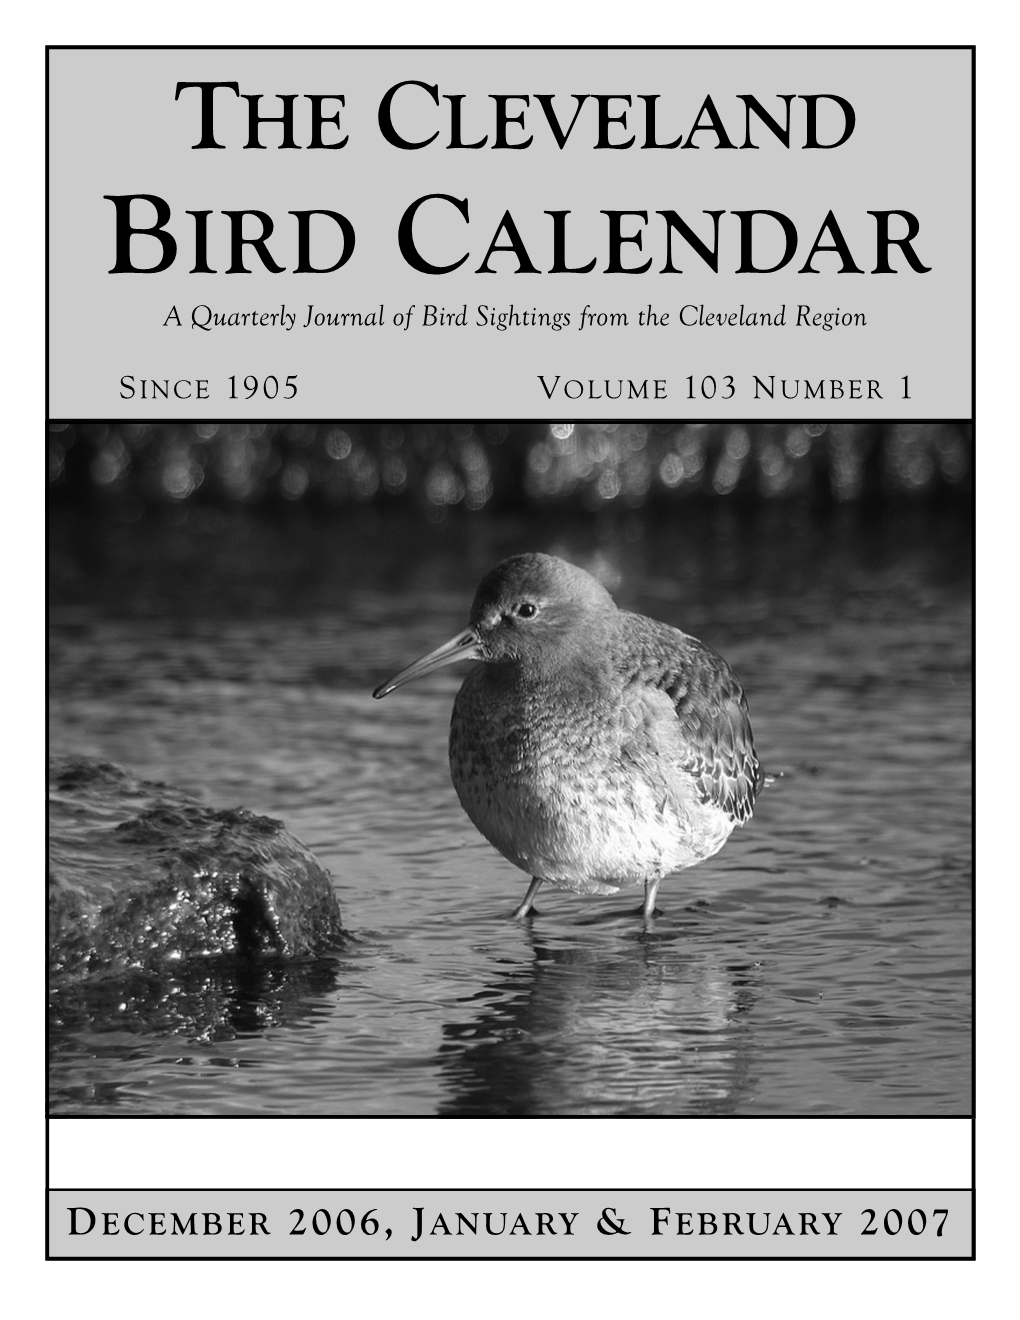 Cleveland Bird Calendar Vol103